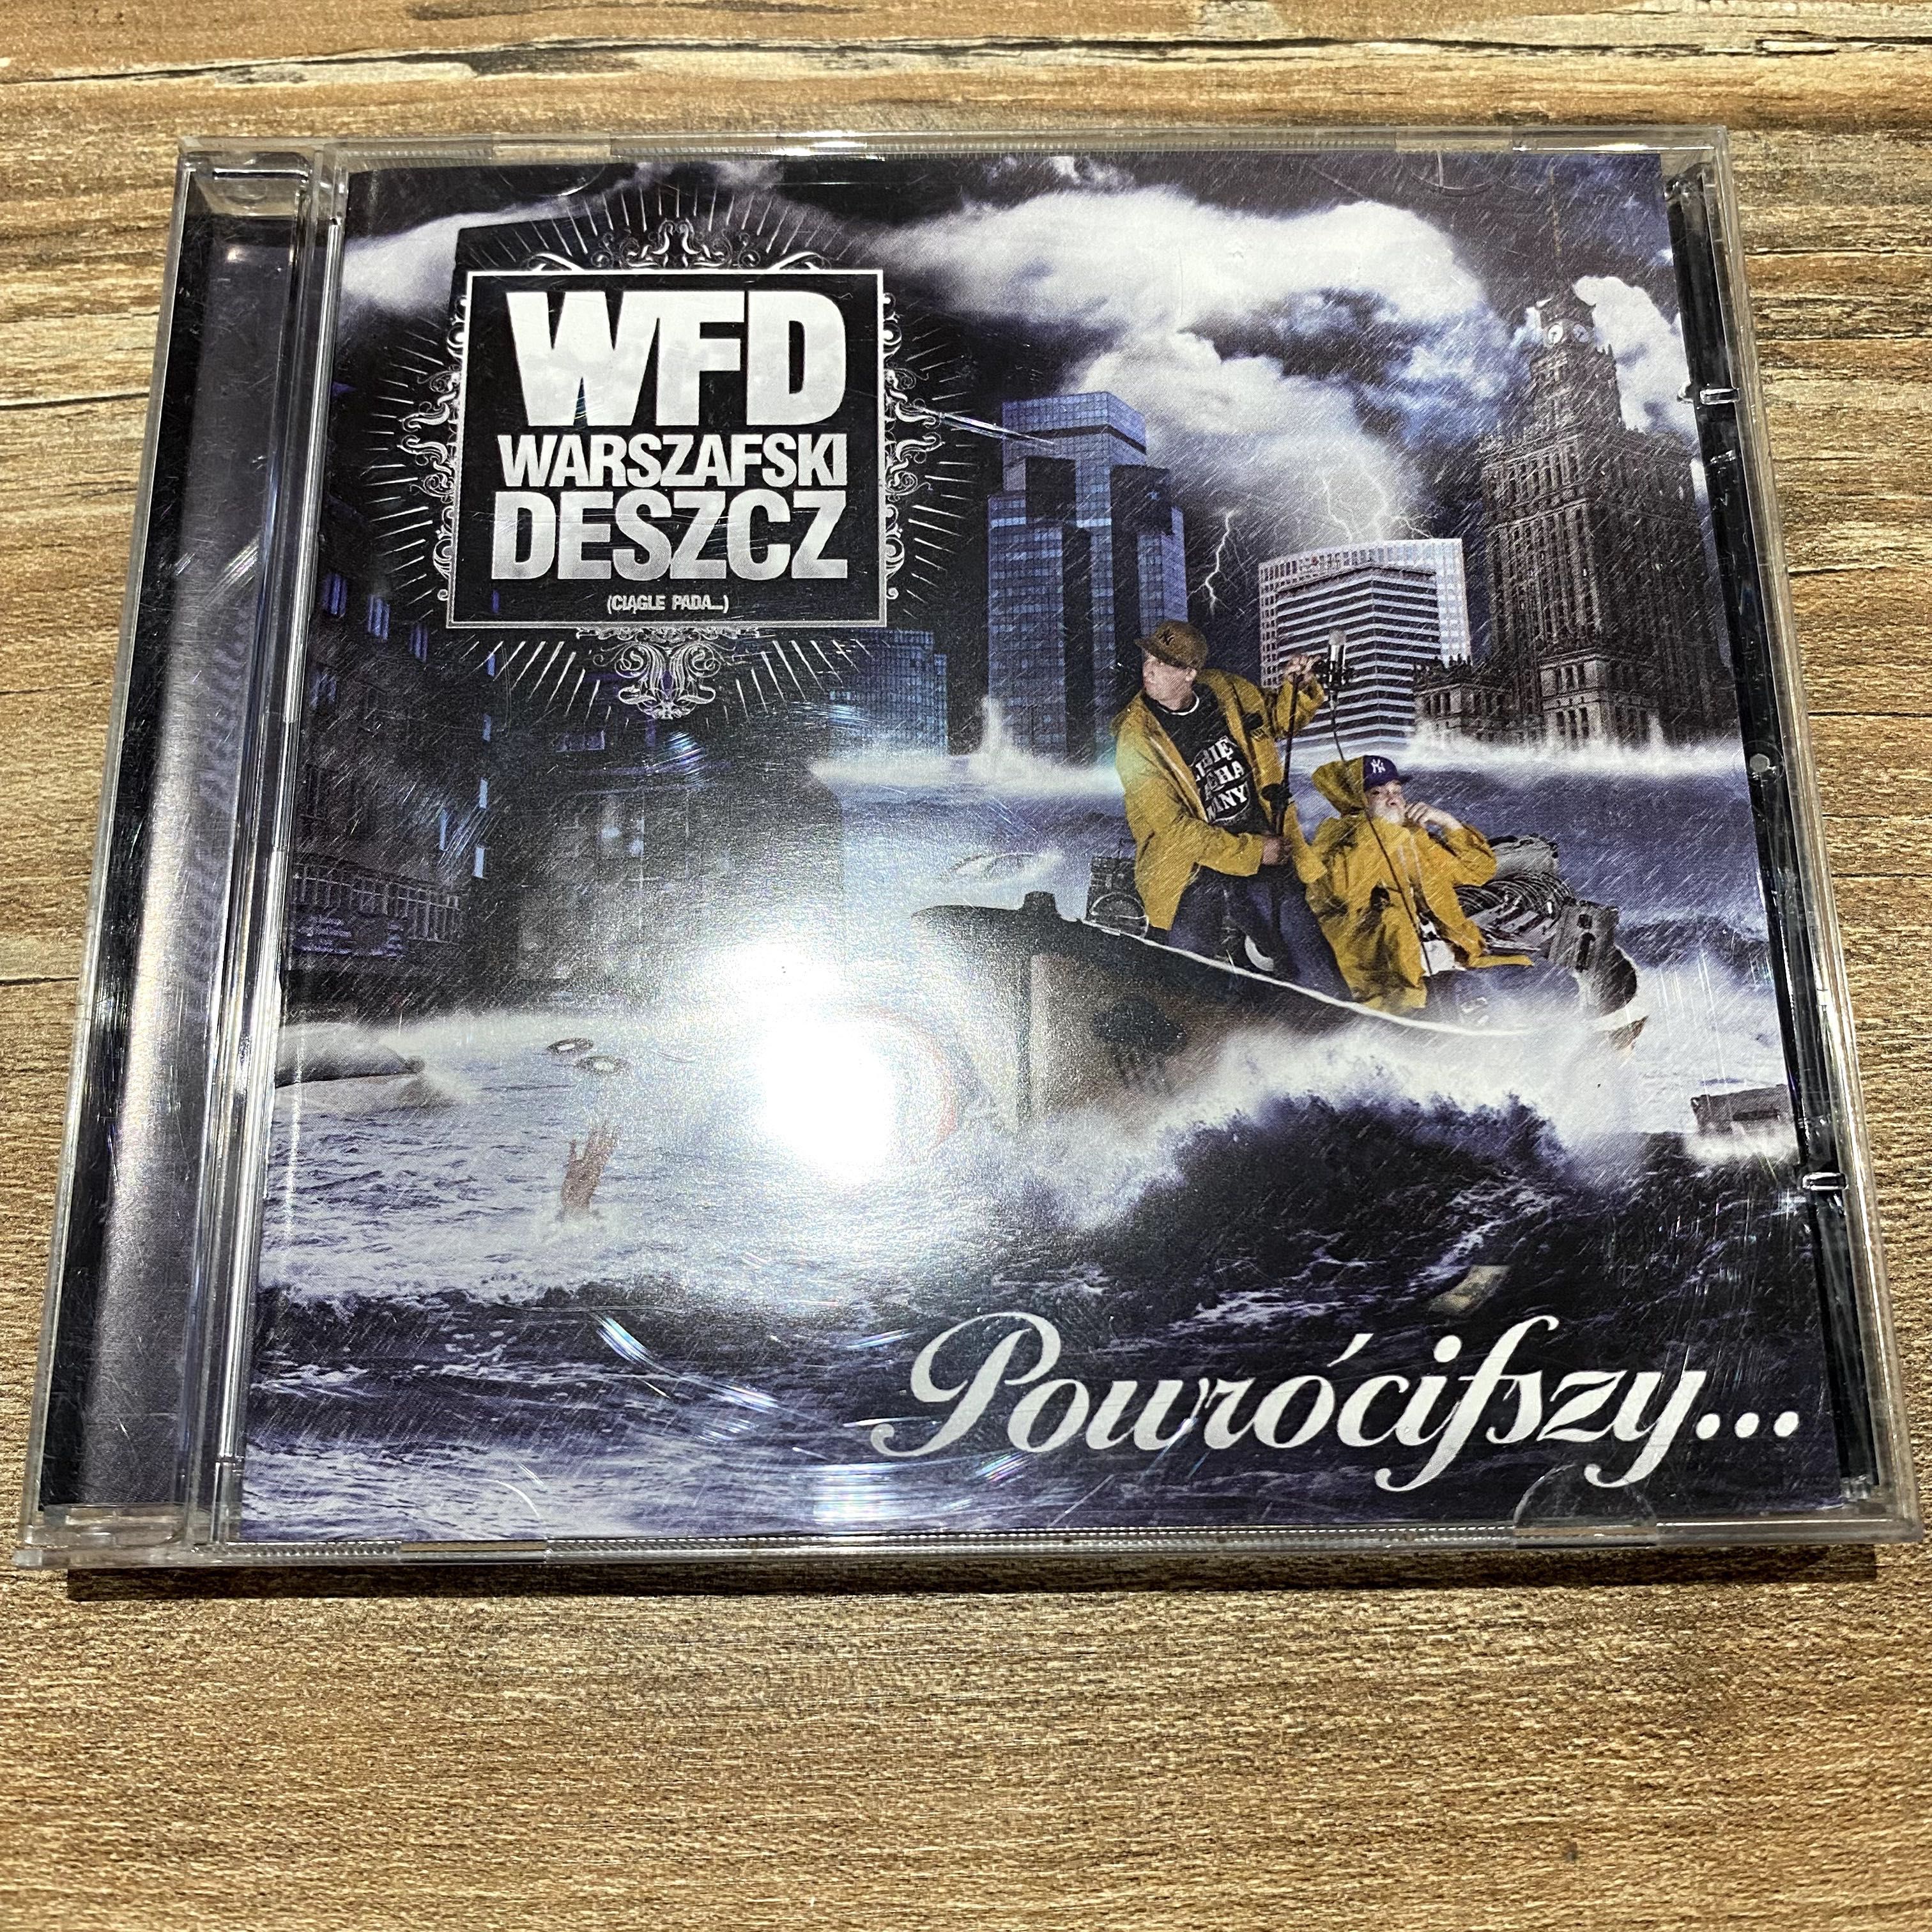 WFD Warszawski Deszcz - Powróciwszy 1 Wydanie CD Tede / Numer raz